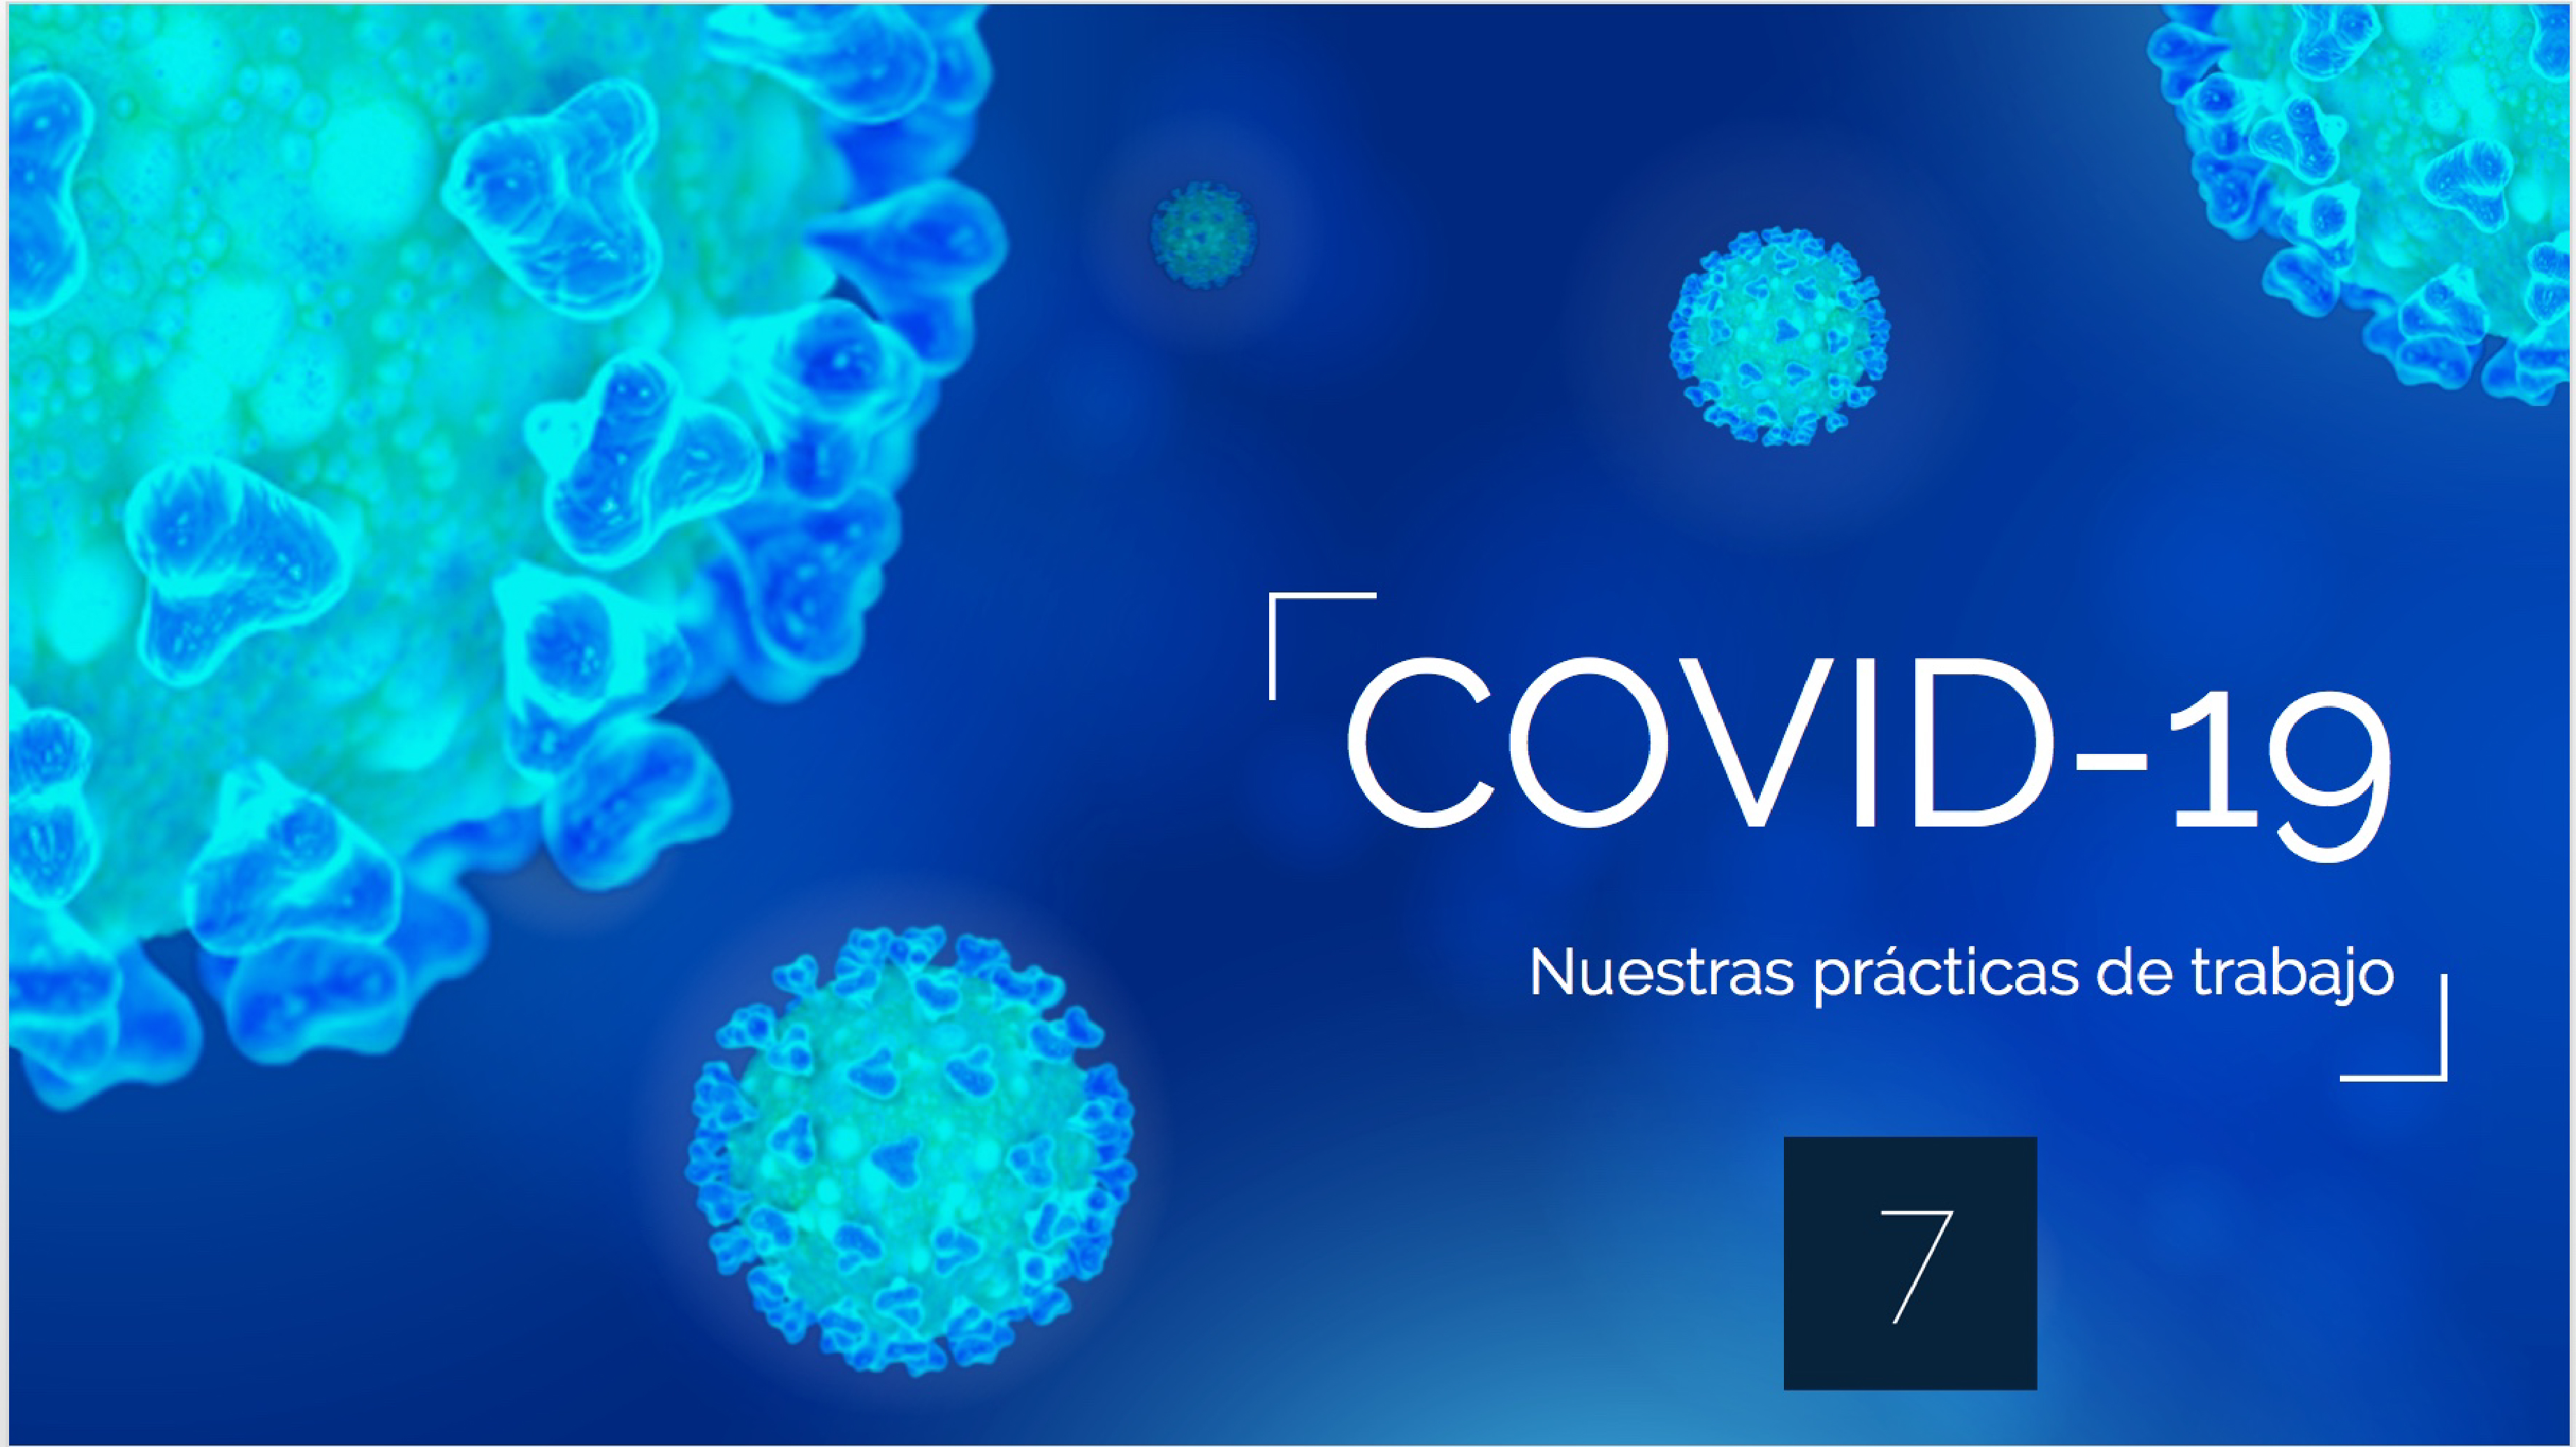 Nuestras prácticas de trabajo con razón de la Pandemia COVID-19